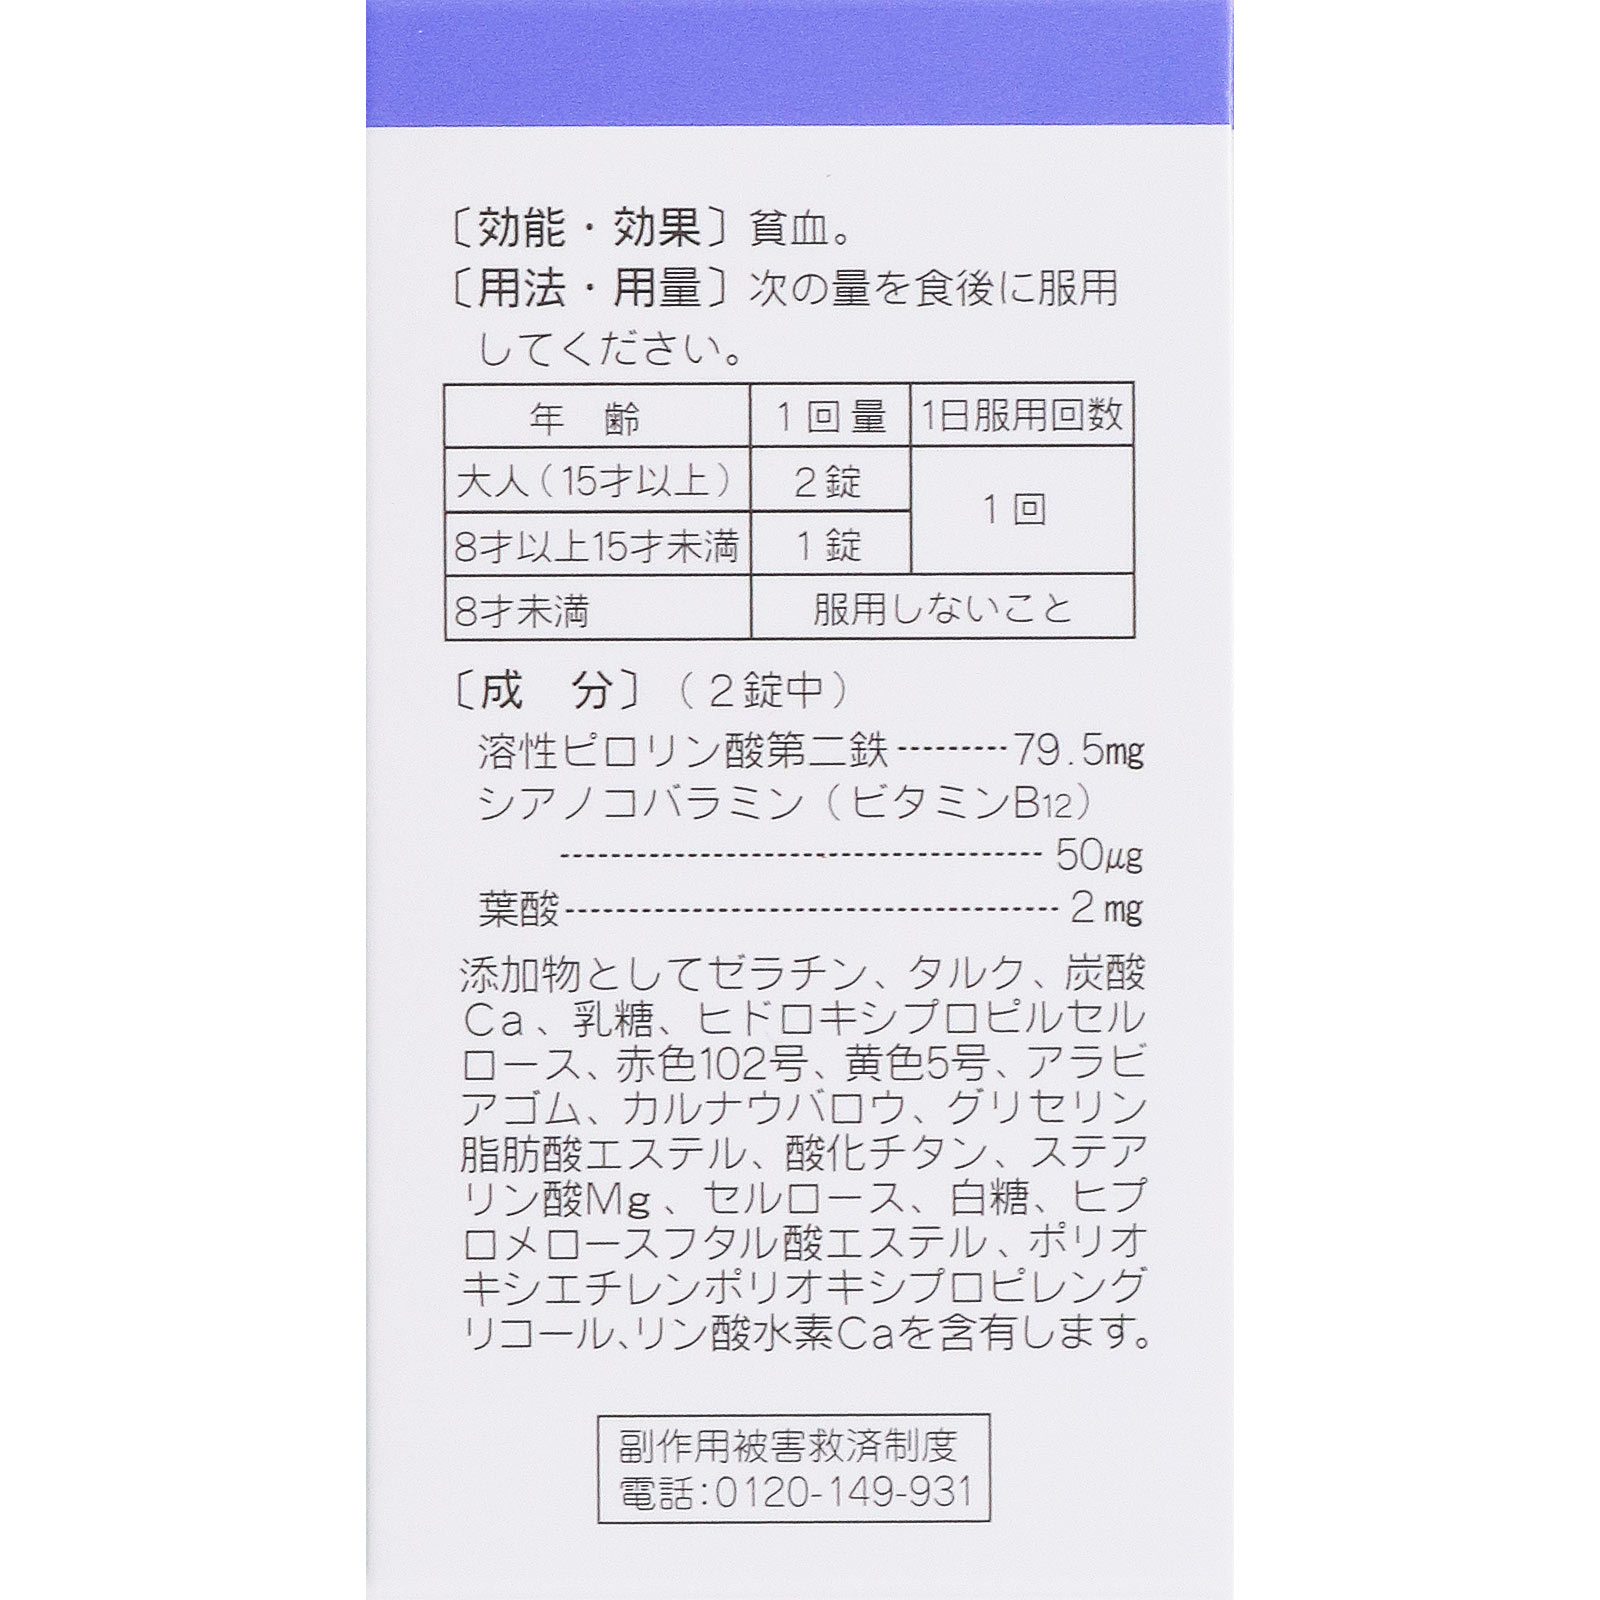 即納送料無料! 全薬工業ヘマニック 180錠 第2類医薬品 terahaku.jp